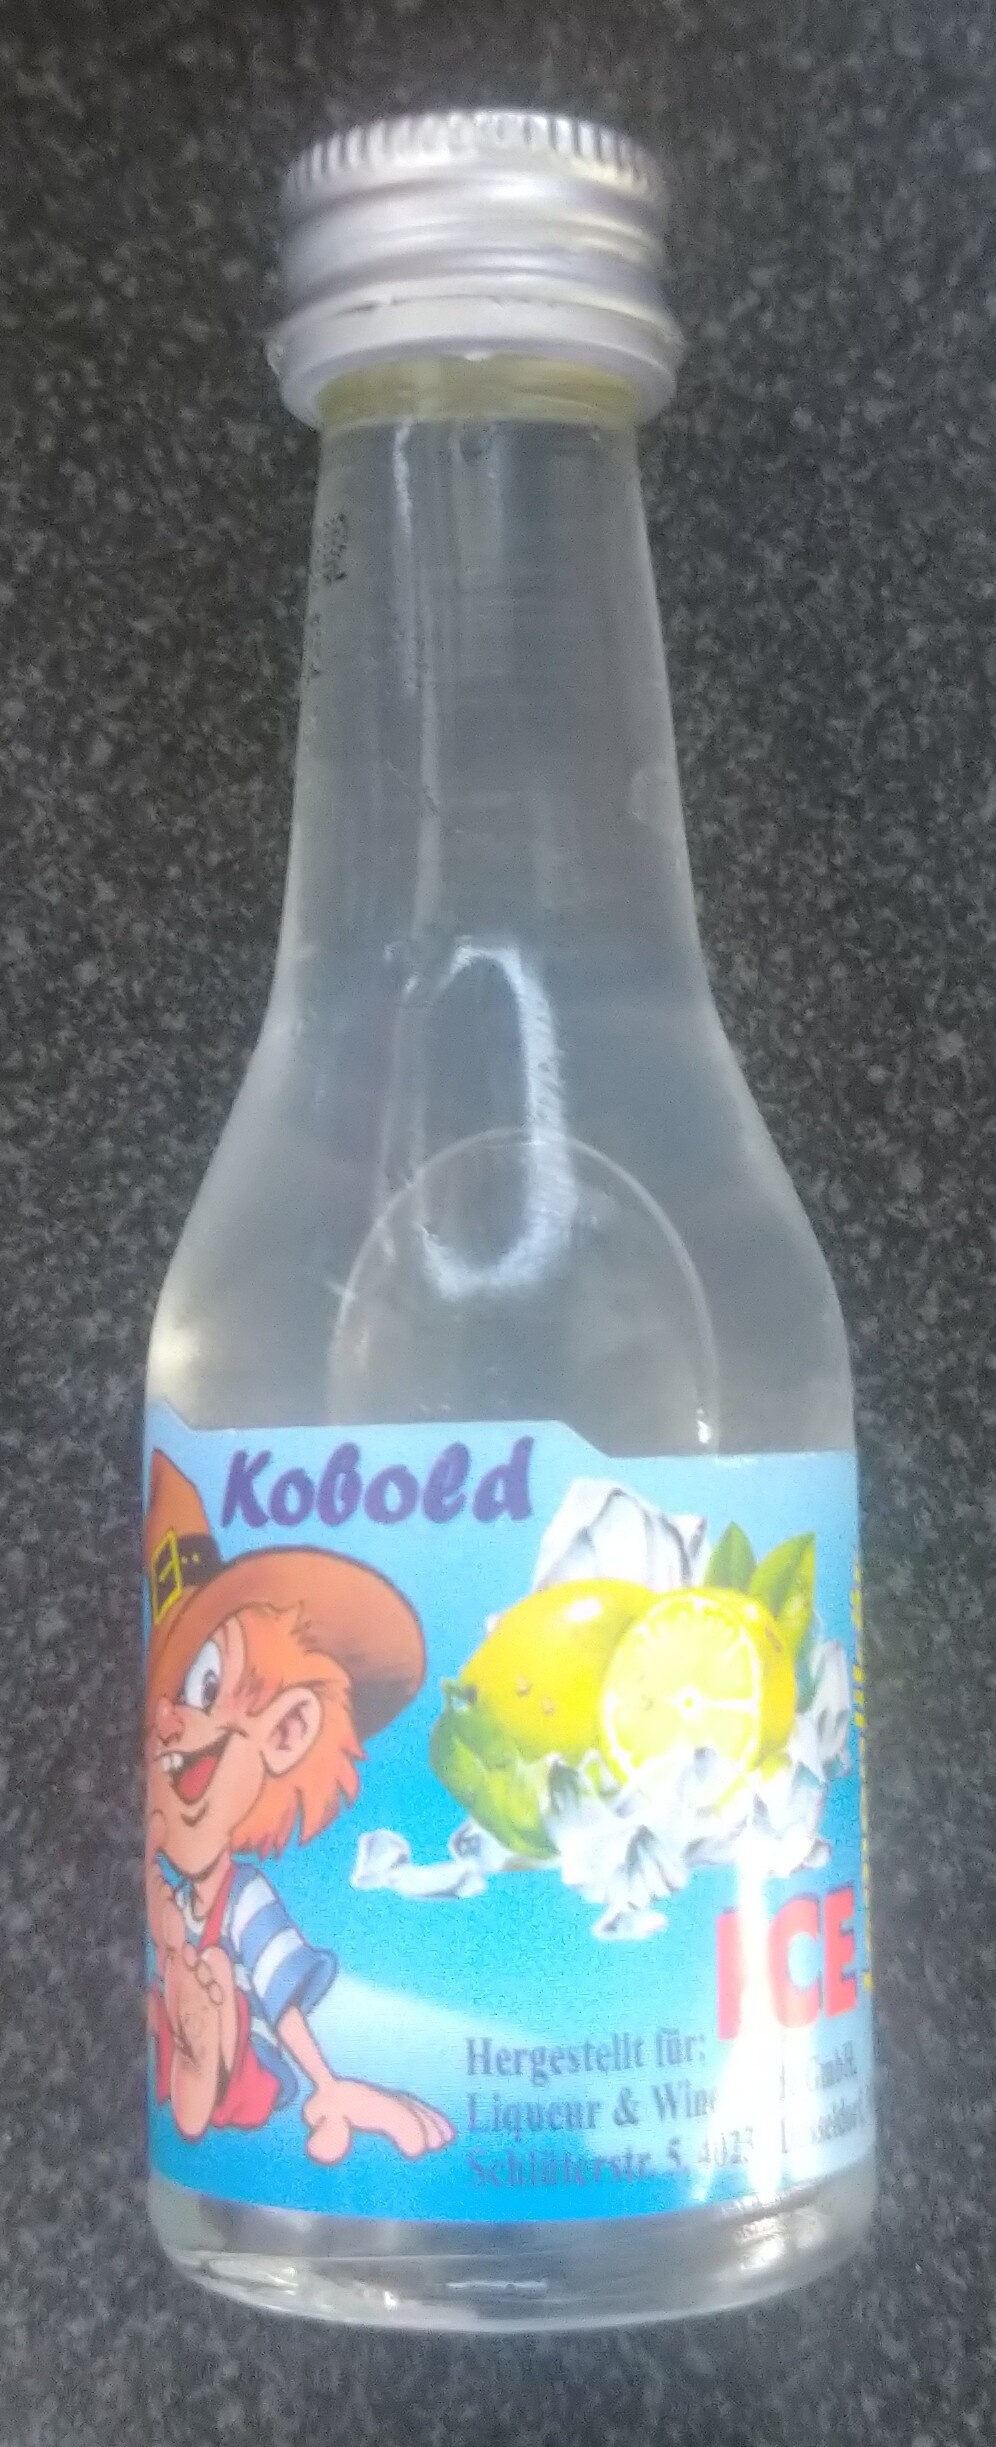 Kleiner Kobold ICE - Product - de